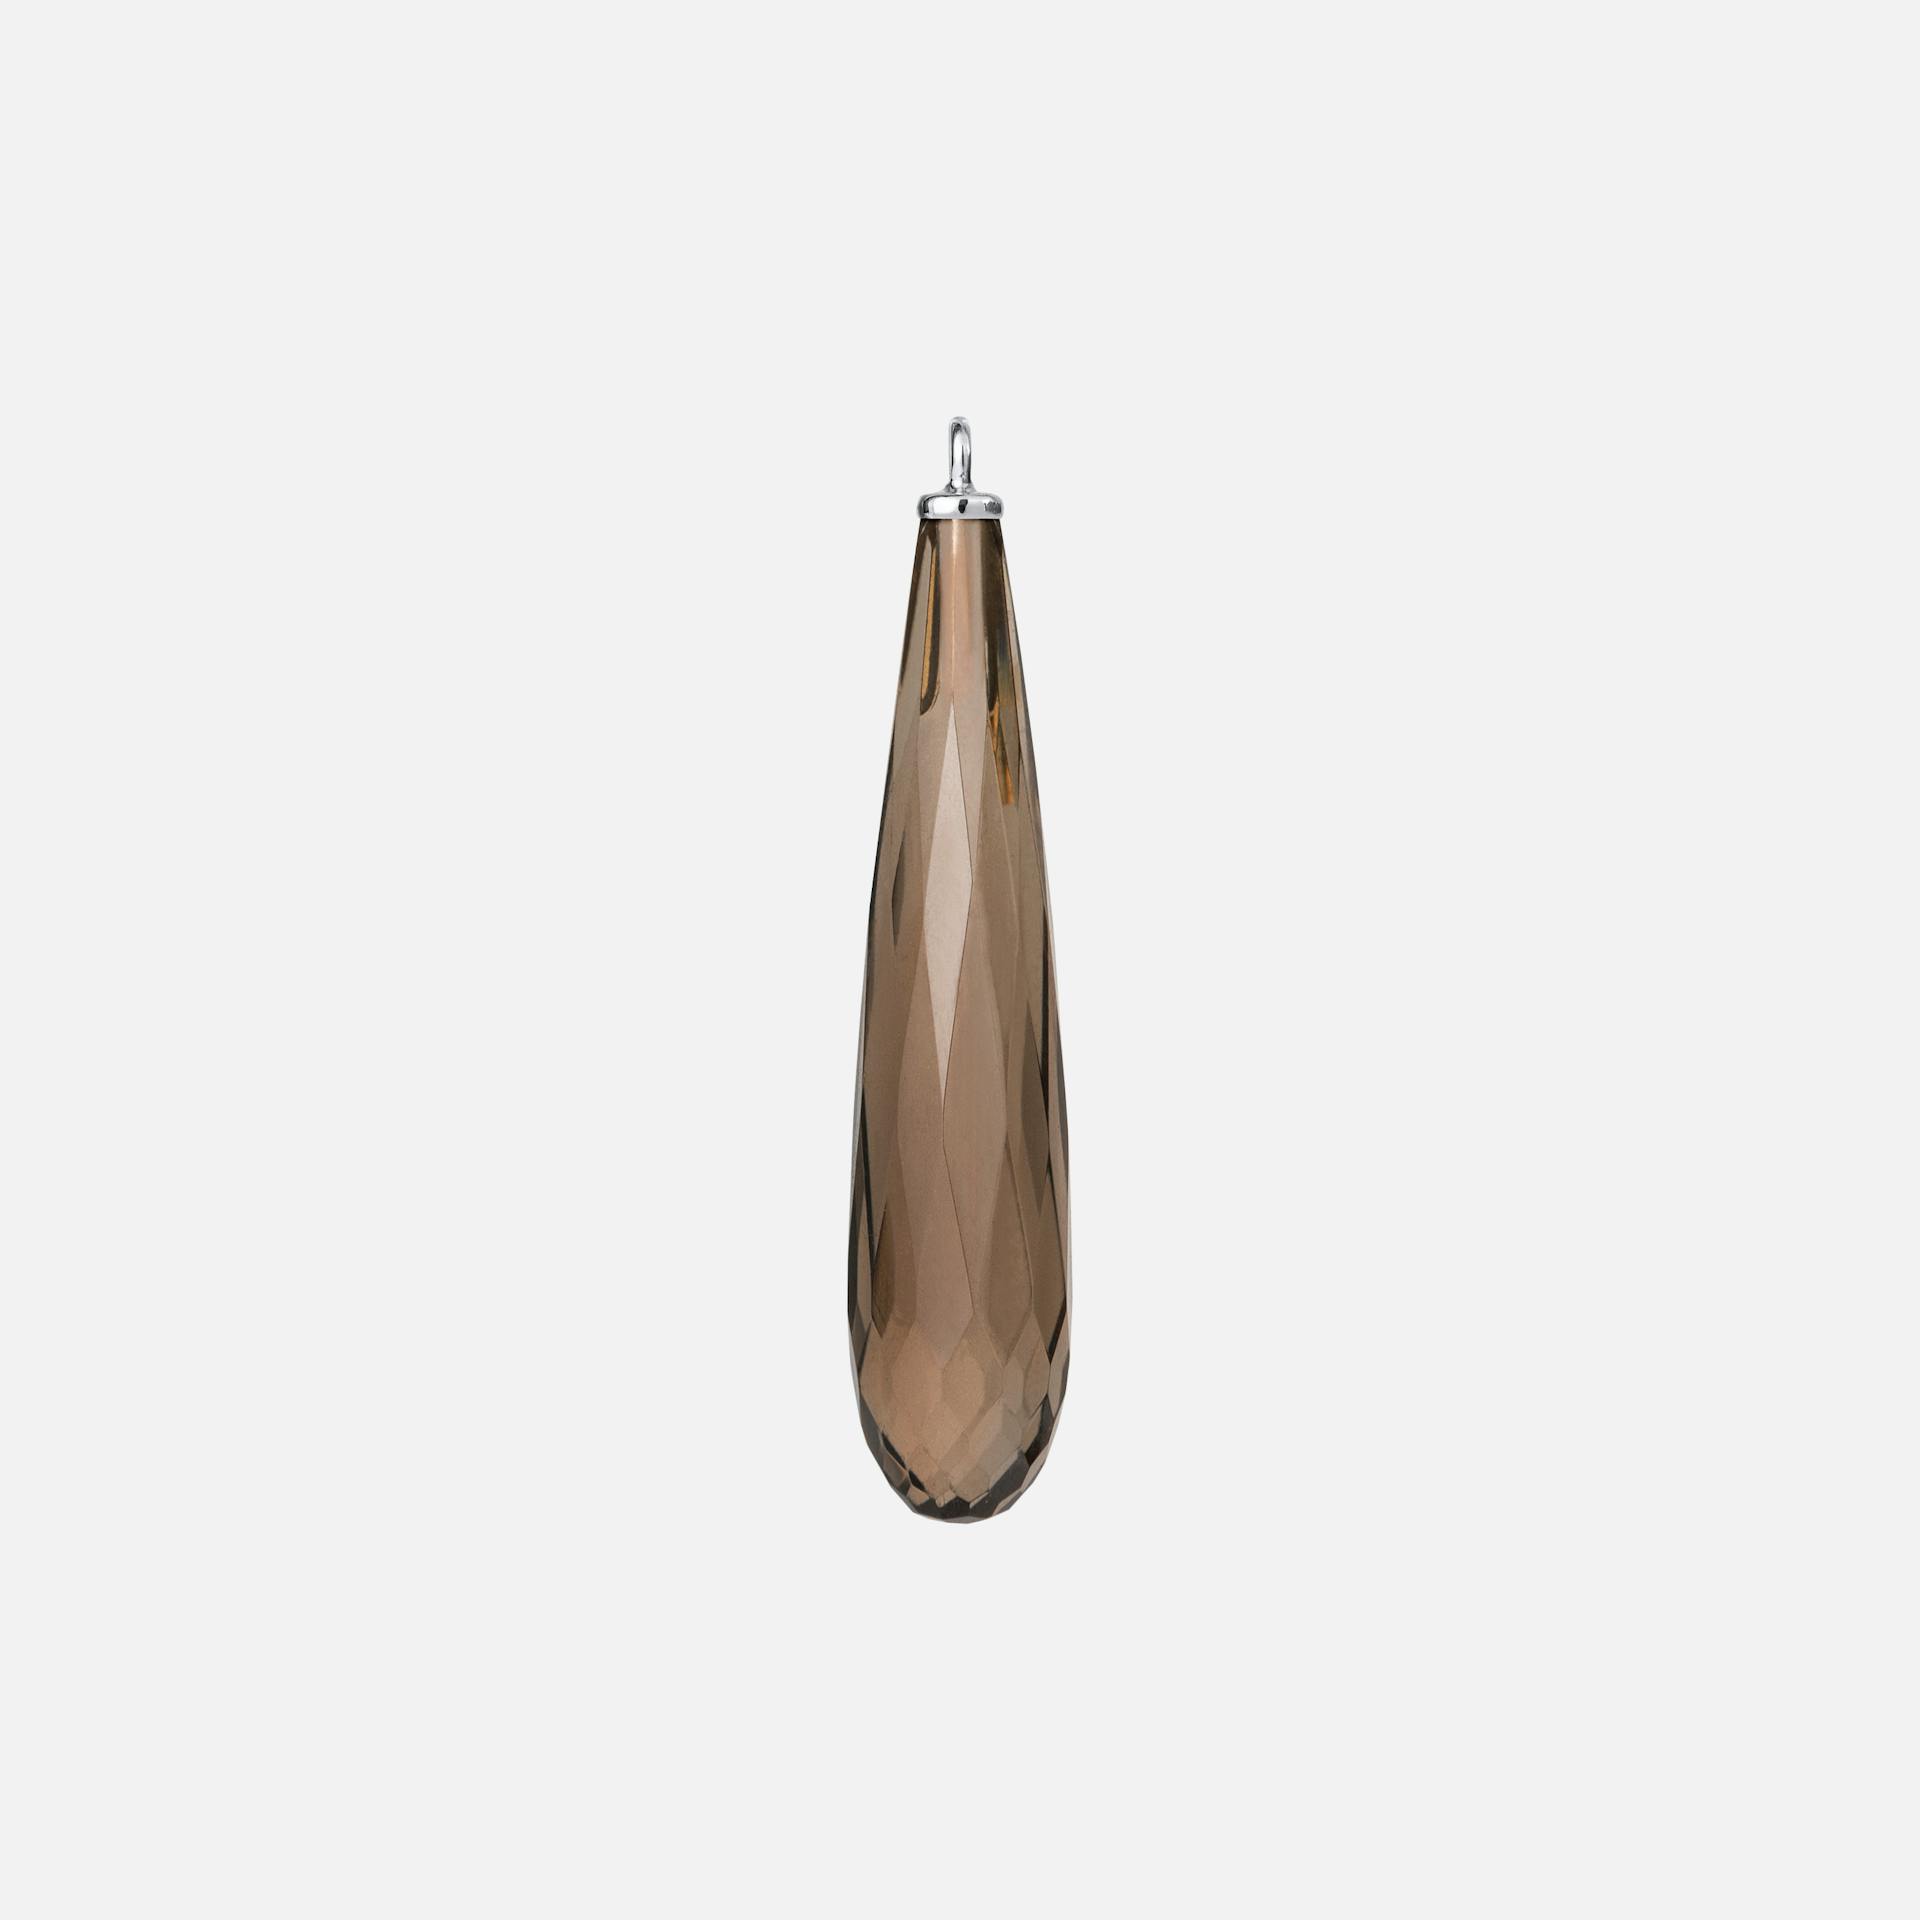 Drop Earring Pendants in 18K White Gold with Smoky Quartz |  Ole Lynggaard Copenhagen 